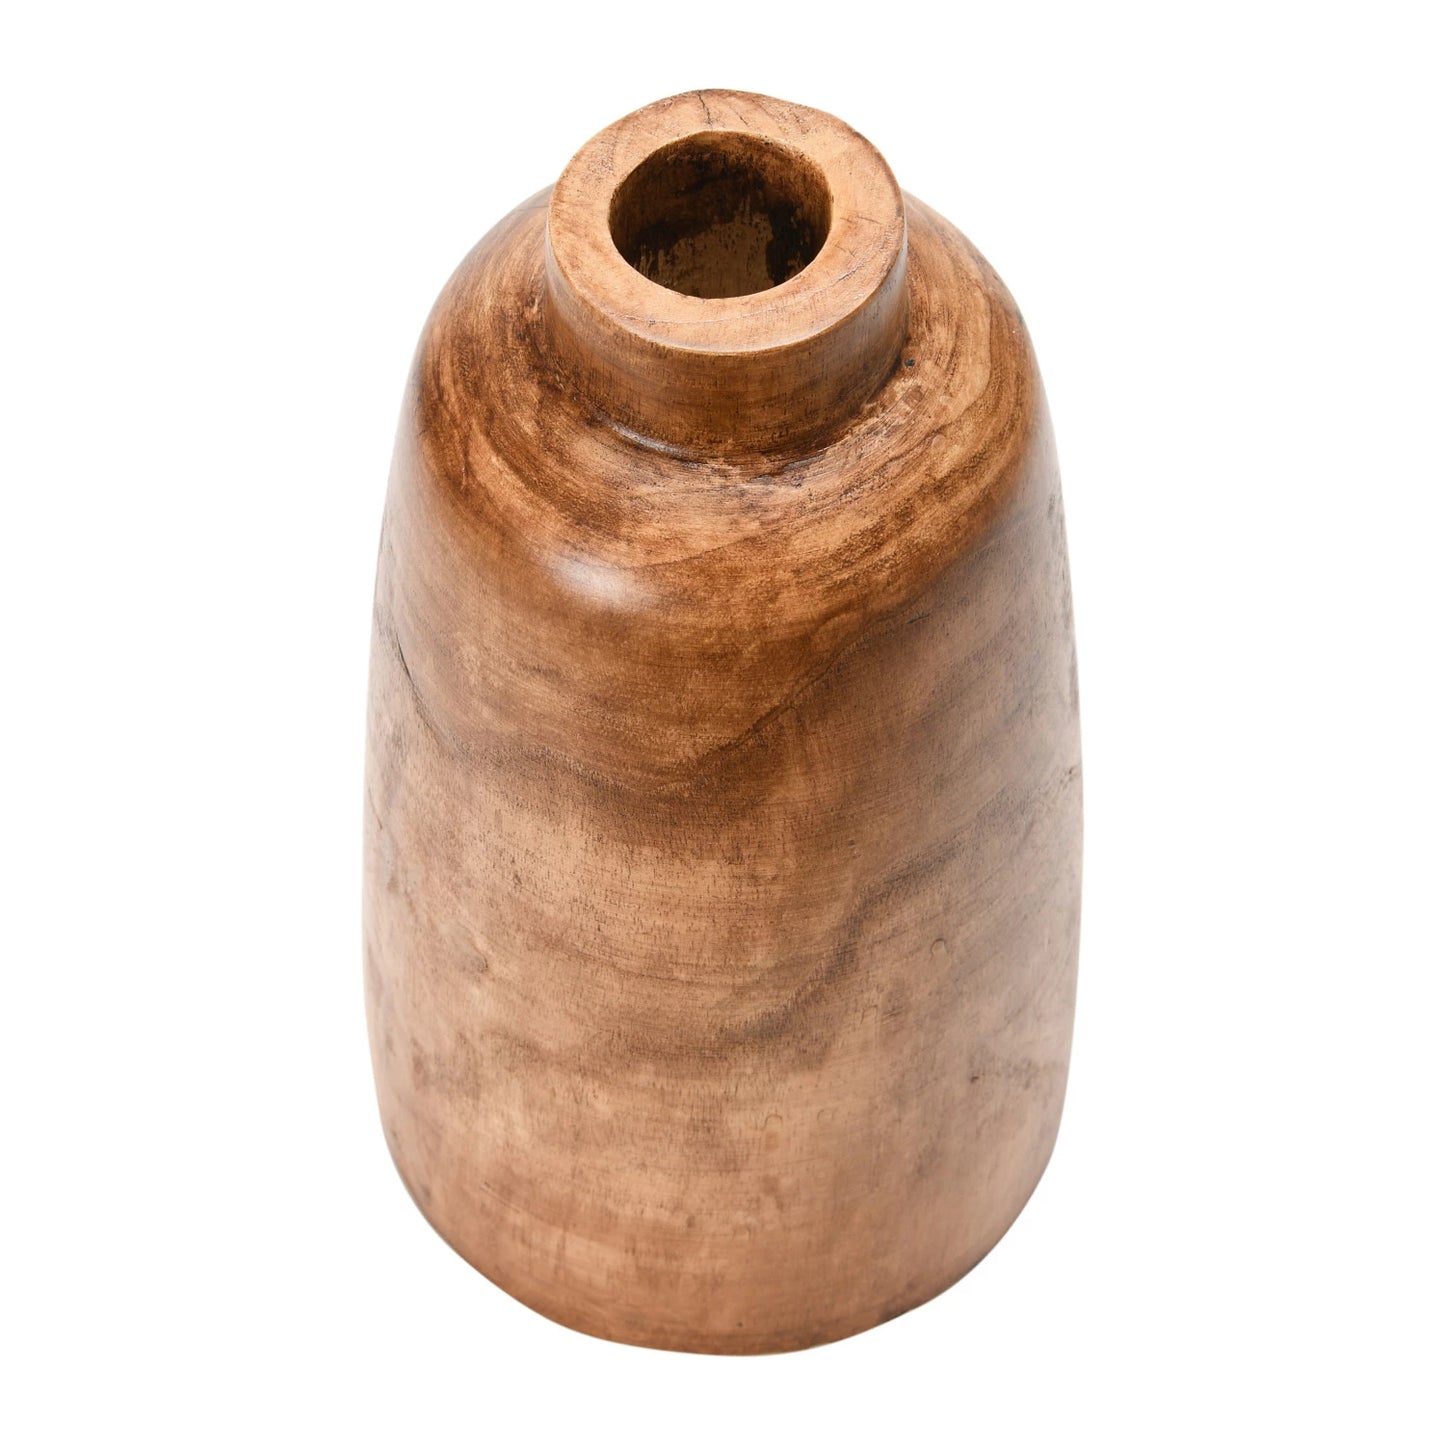 Paulownia Wood Vase, Walnut Stained Finish